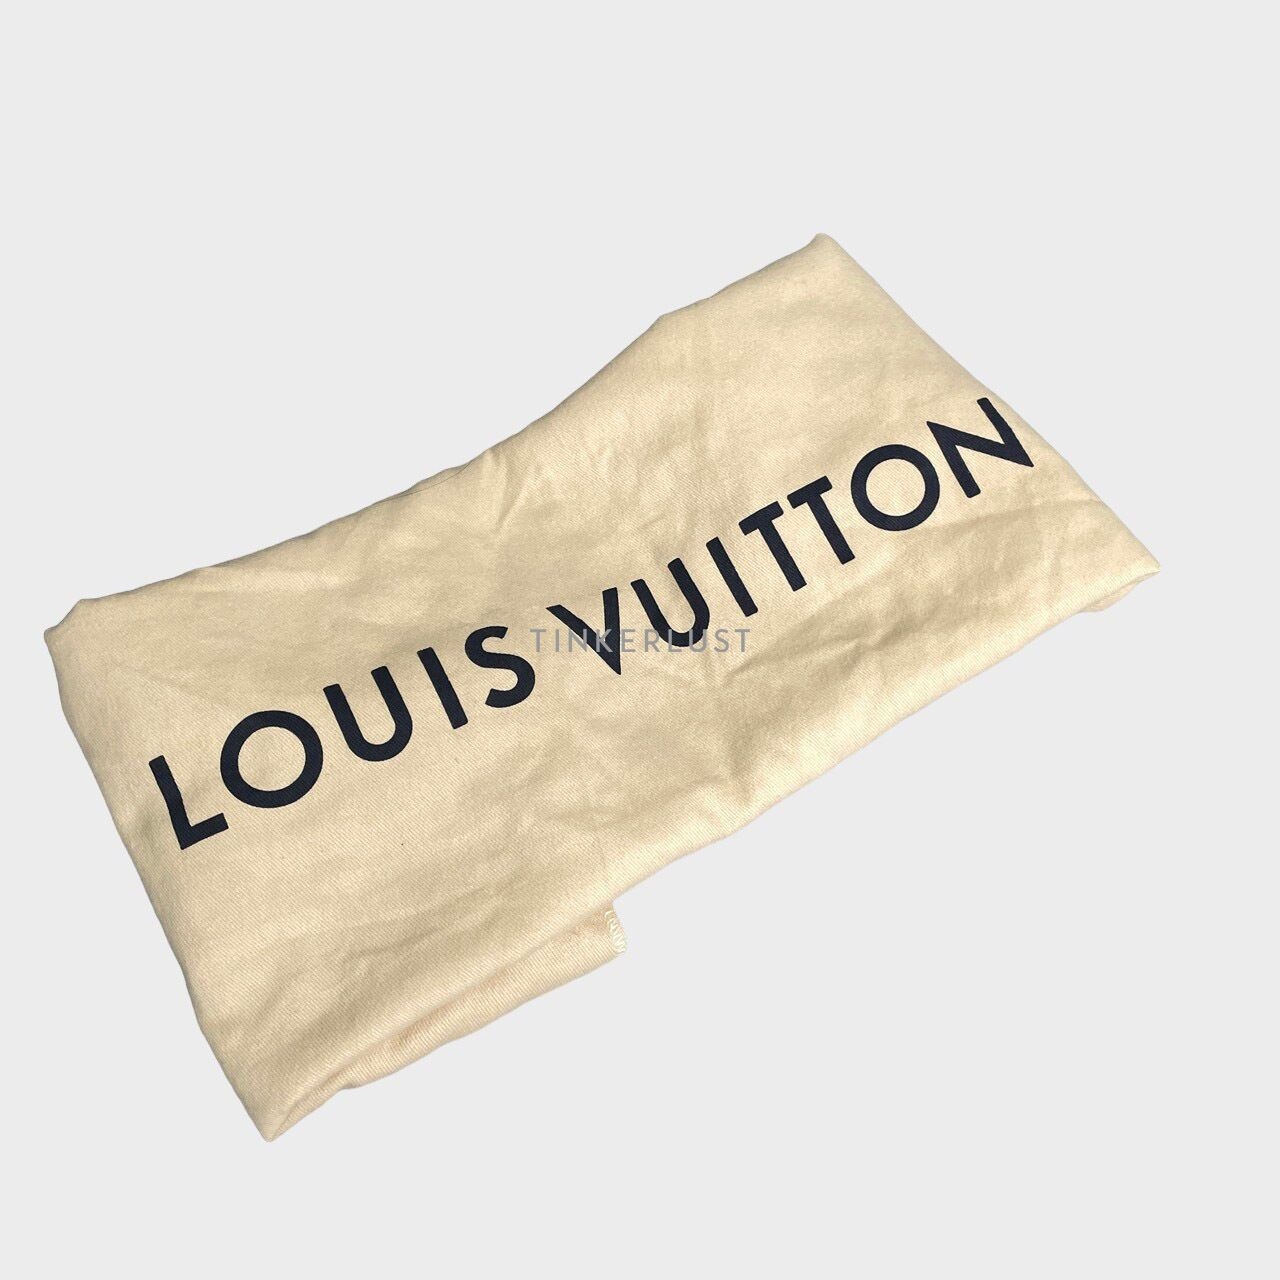 Louis Vuitton Empreinte Trocadero Black Shoulder Bag 2015